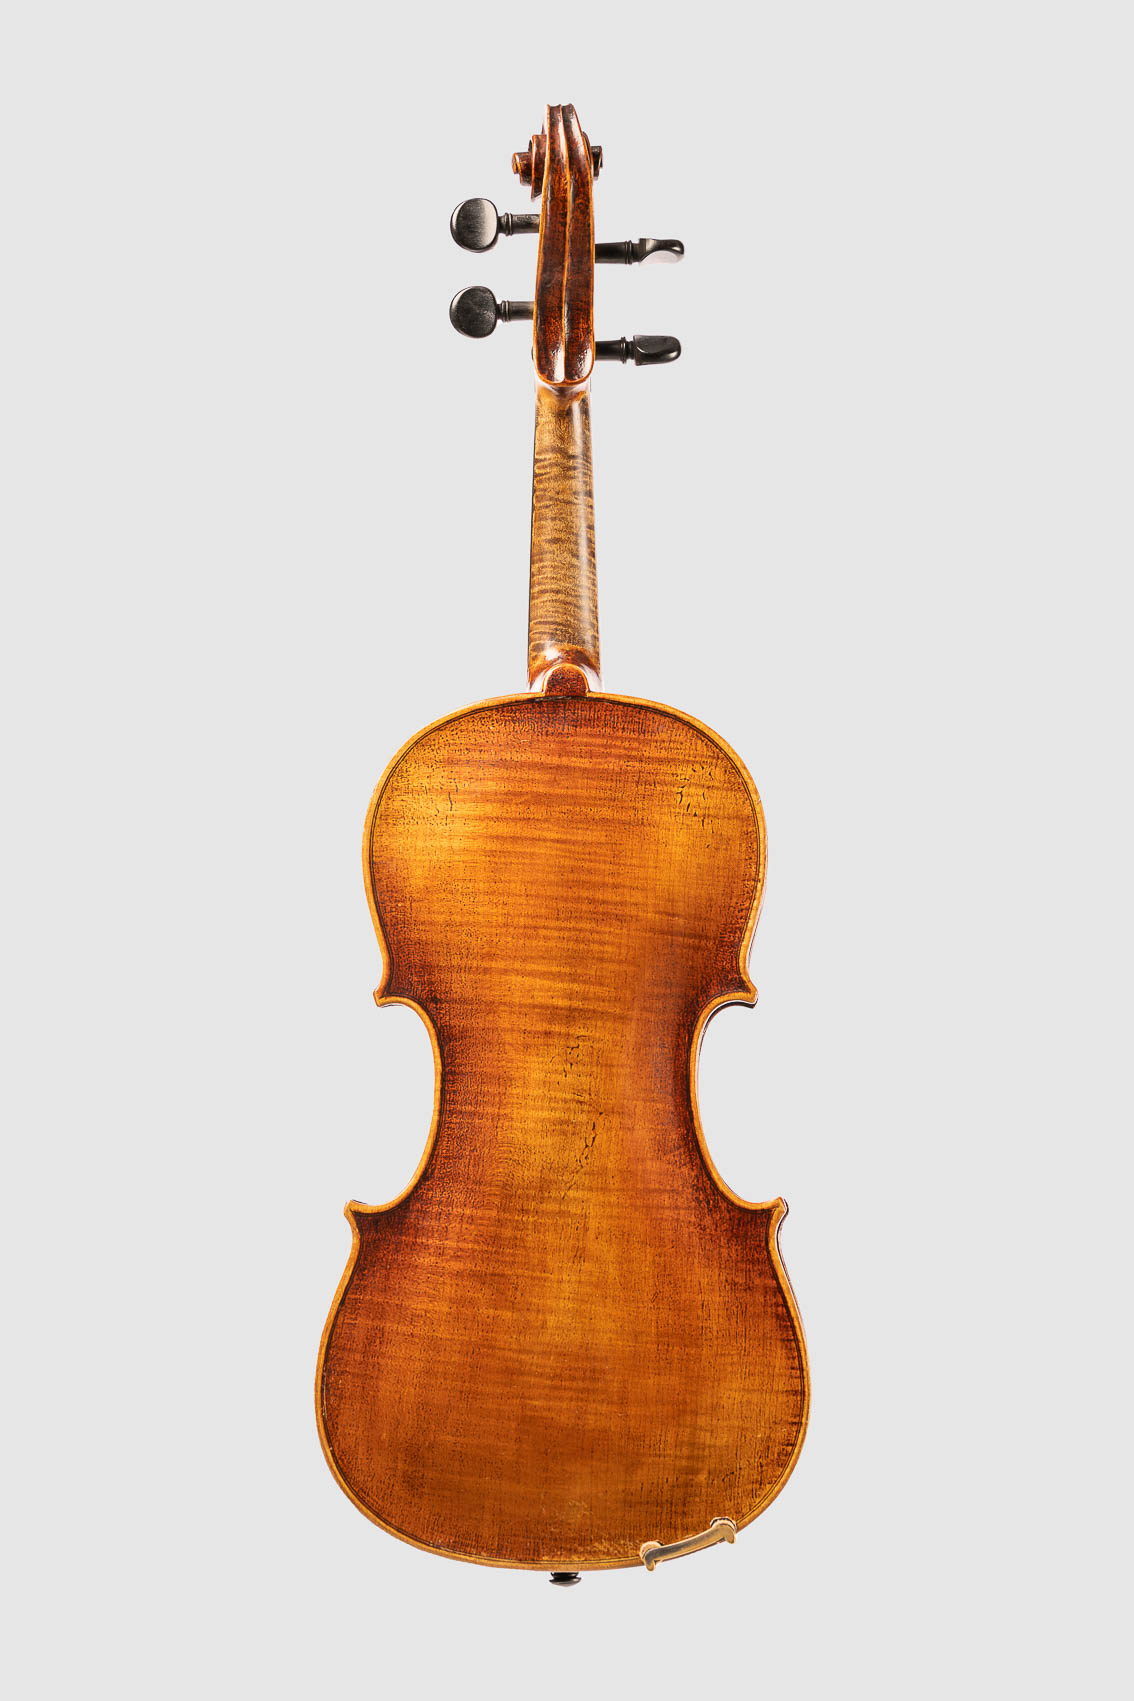 Geige bzw. Bratsche, Streichinstrumentes von hinten, von der Rückseite. Freisteller, Packshoot.